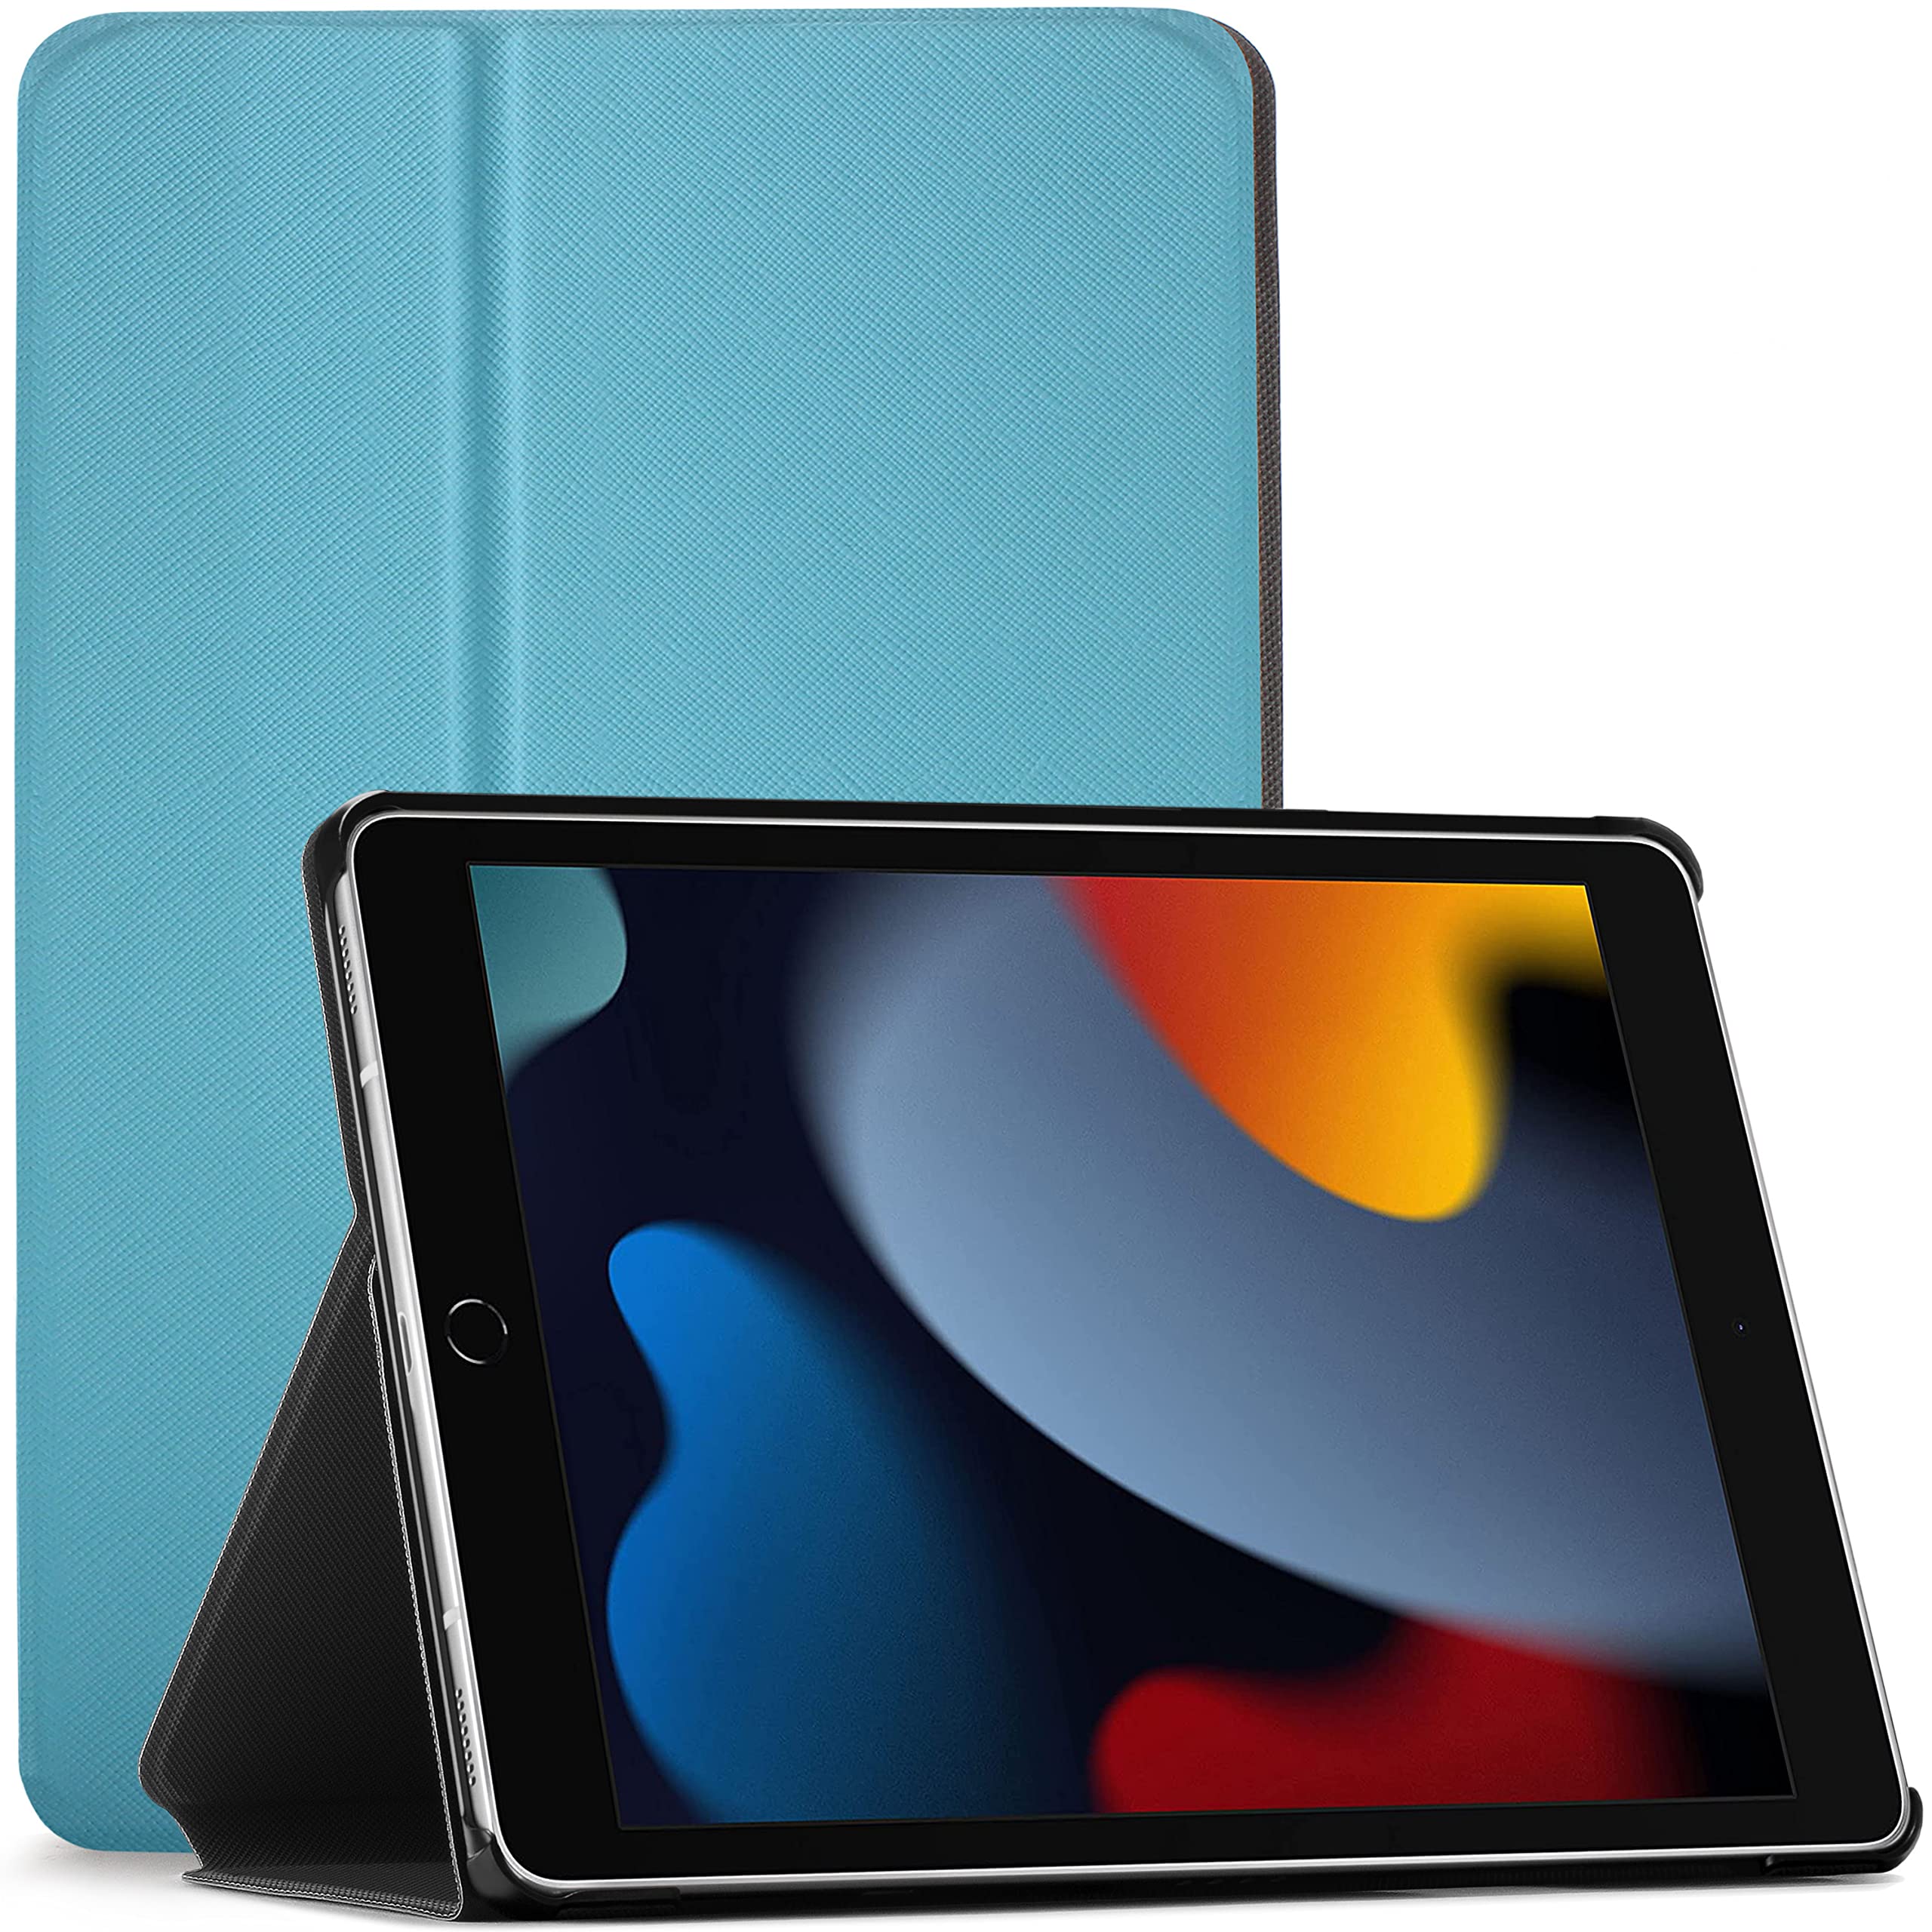 FOREFRONT CASES Hülle für iPad 9. Generation - Schutz Apple iPad 10.2 2021 Hülle Ständer - Himmelblau - Dünn & Leicht, Smart Auto Schlaf/Wach, iPad 10,2 Zoll 2021 (9. Generation) Schutzhülle, Tasche